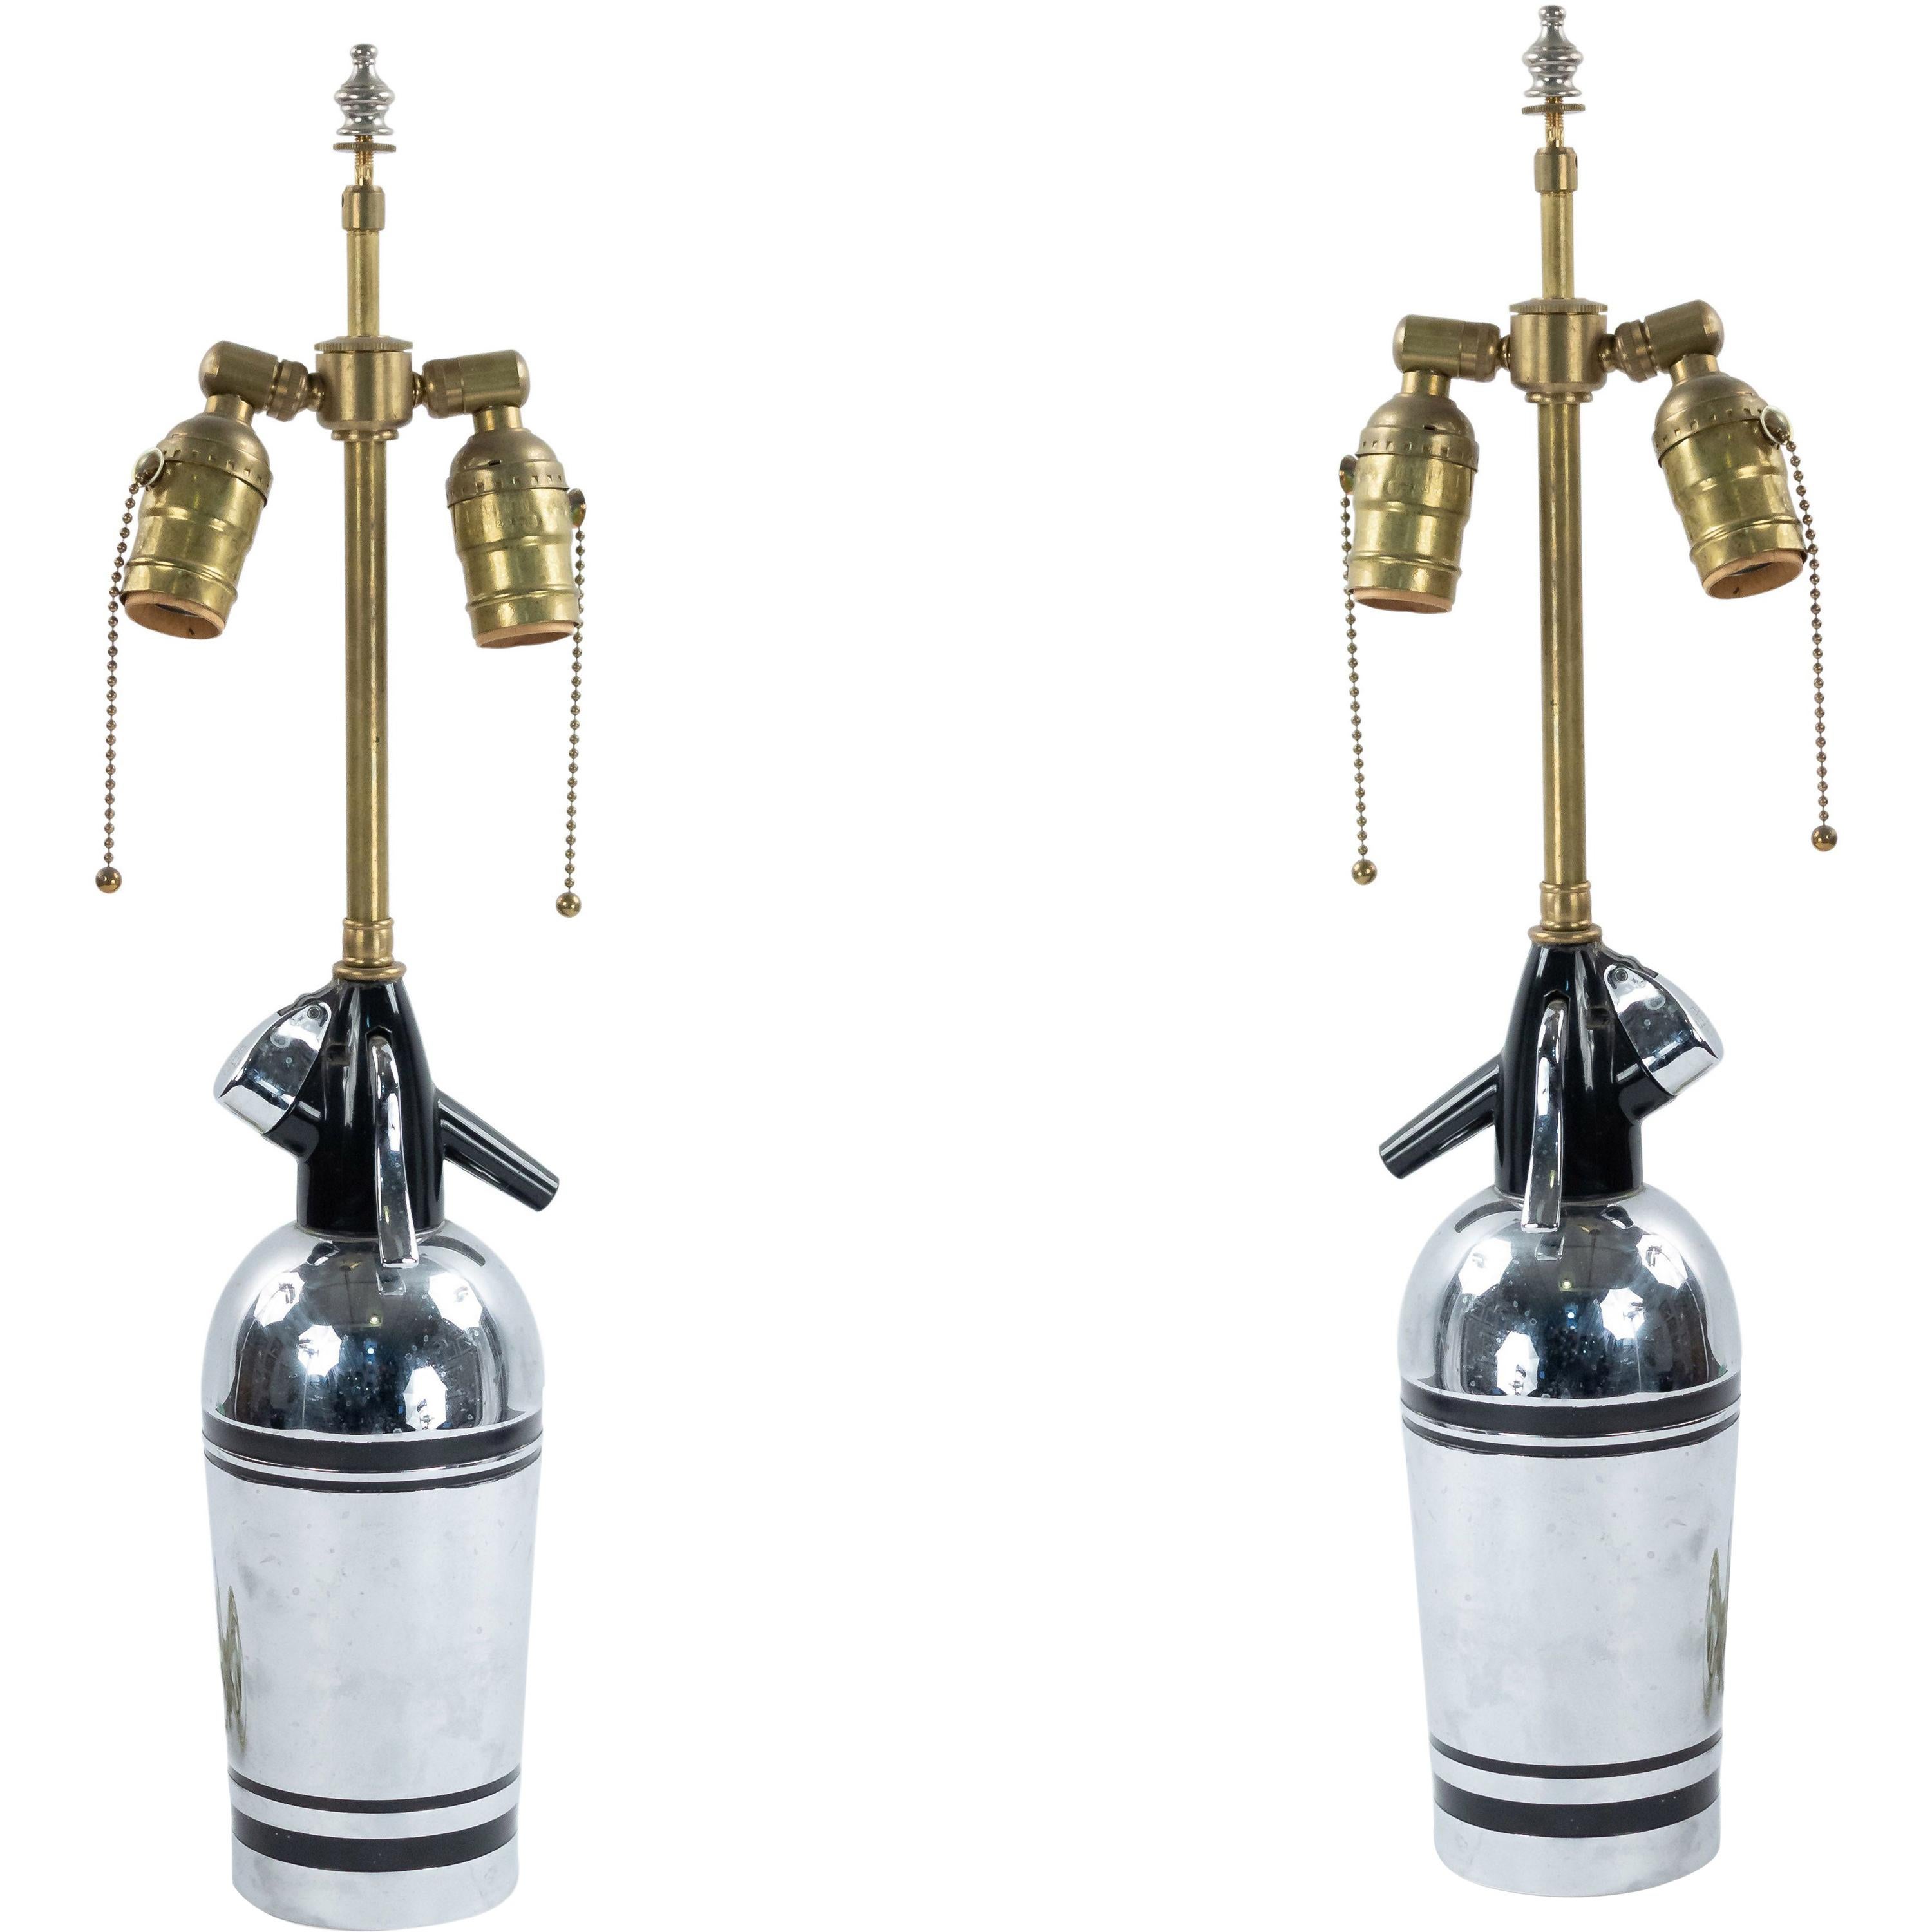 Englische verchromte Syphonflasche im Art déco-Stil als Lampen montiert